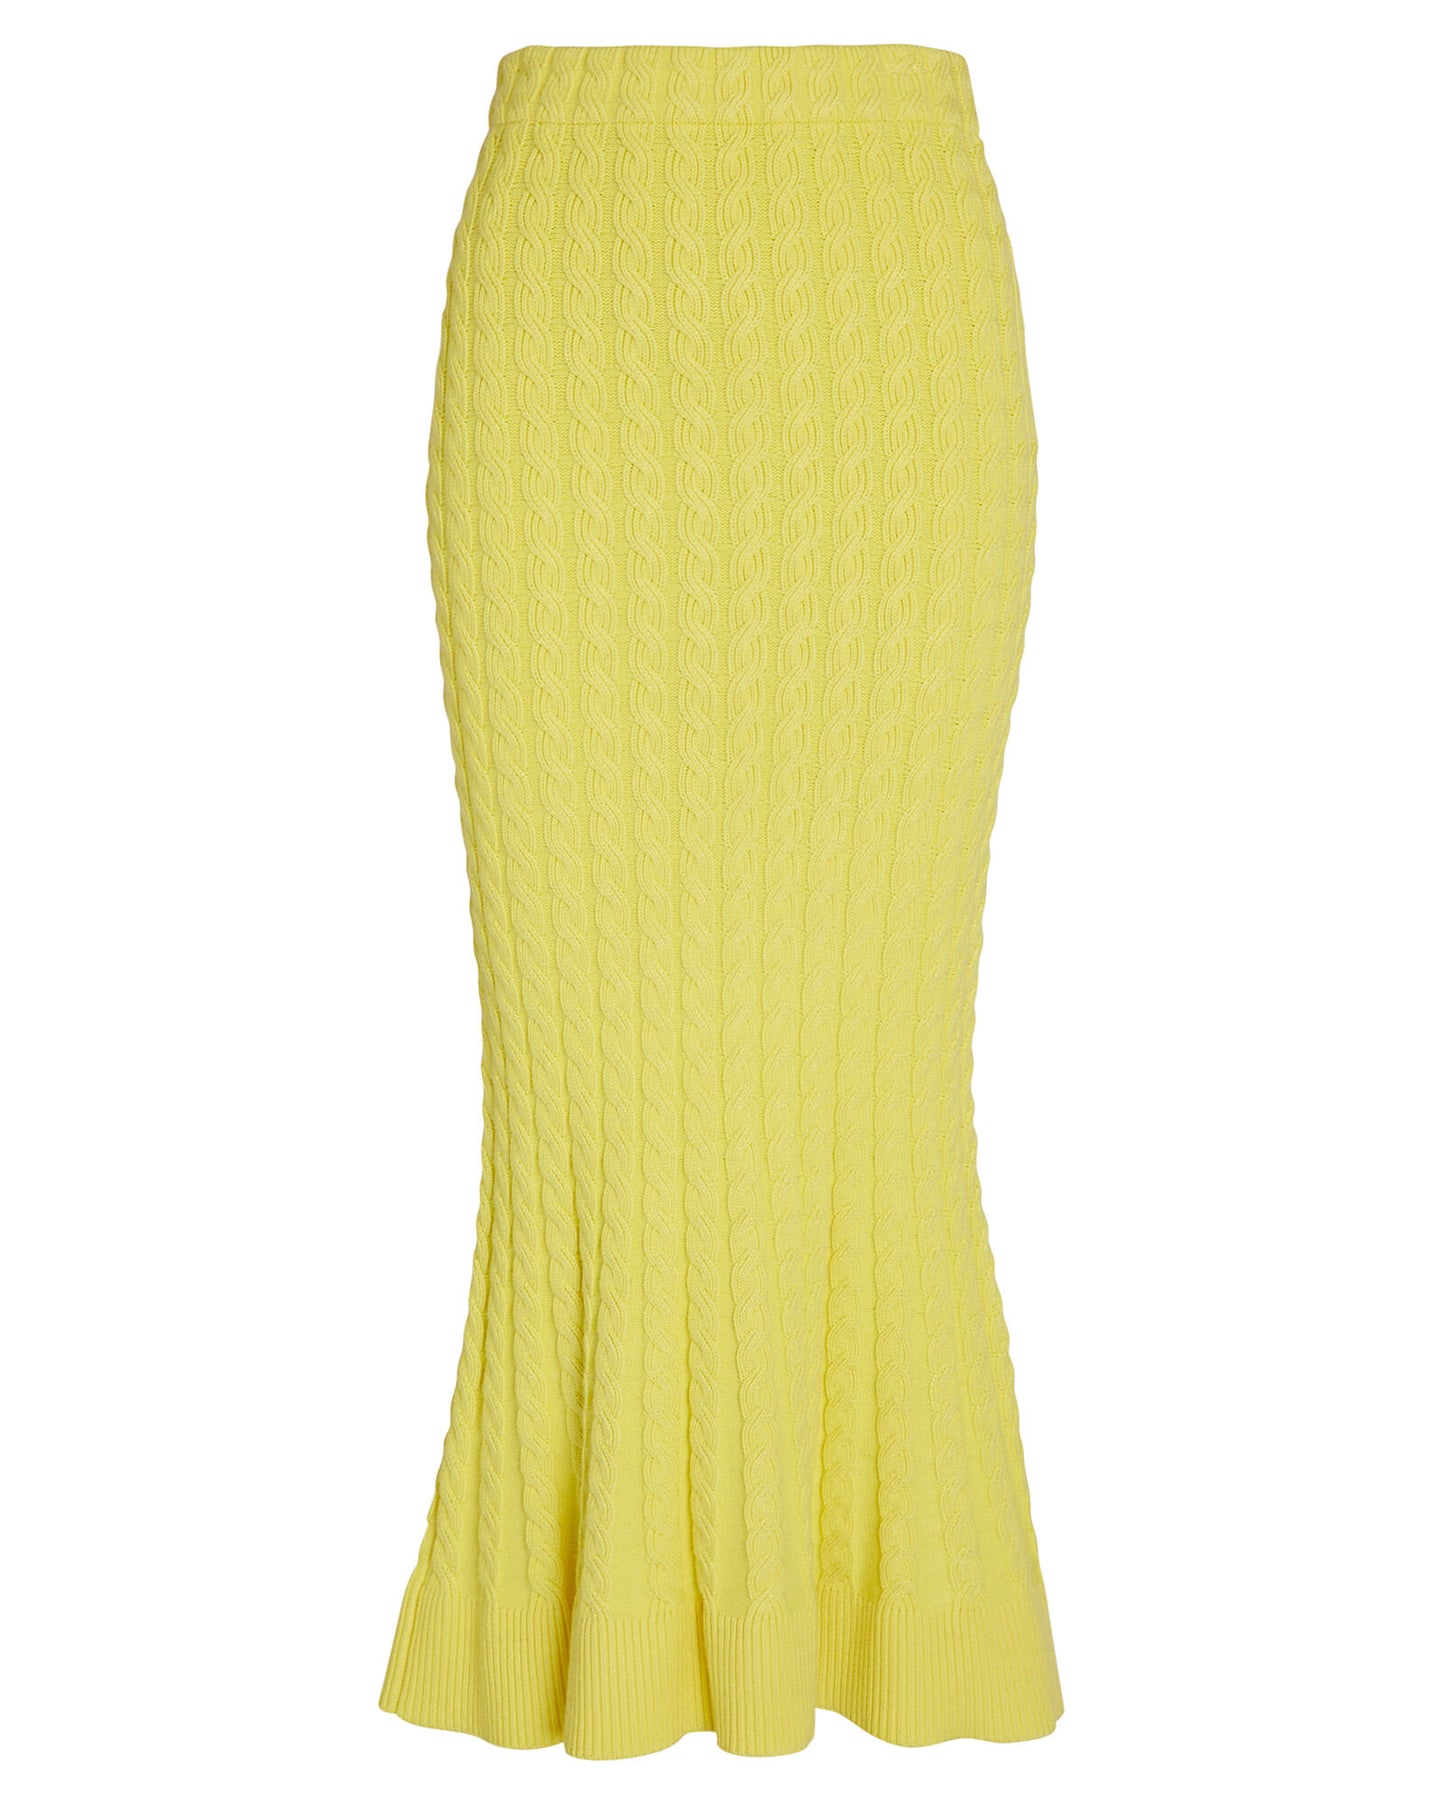 Yellow Midi Skirt - M